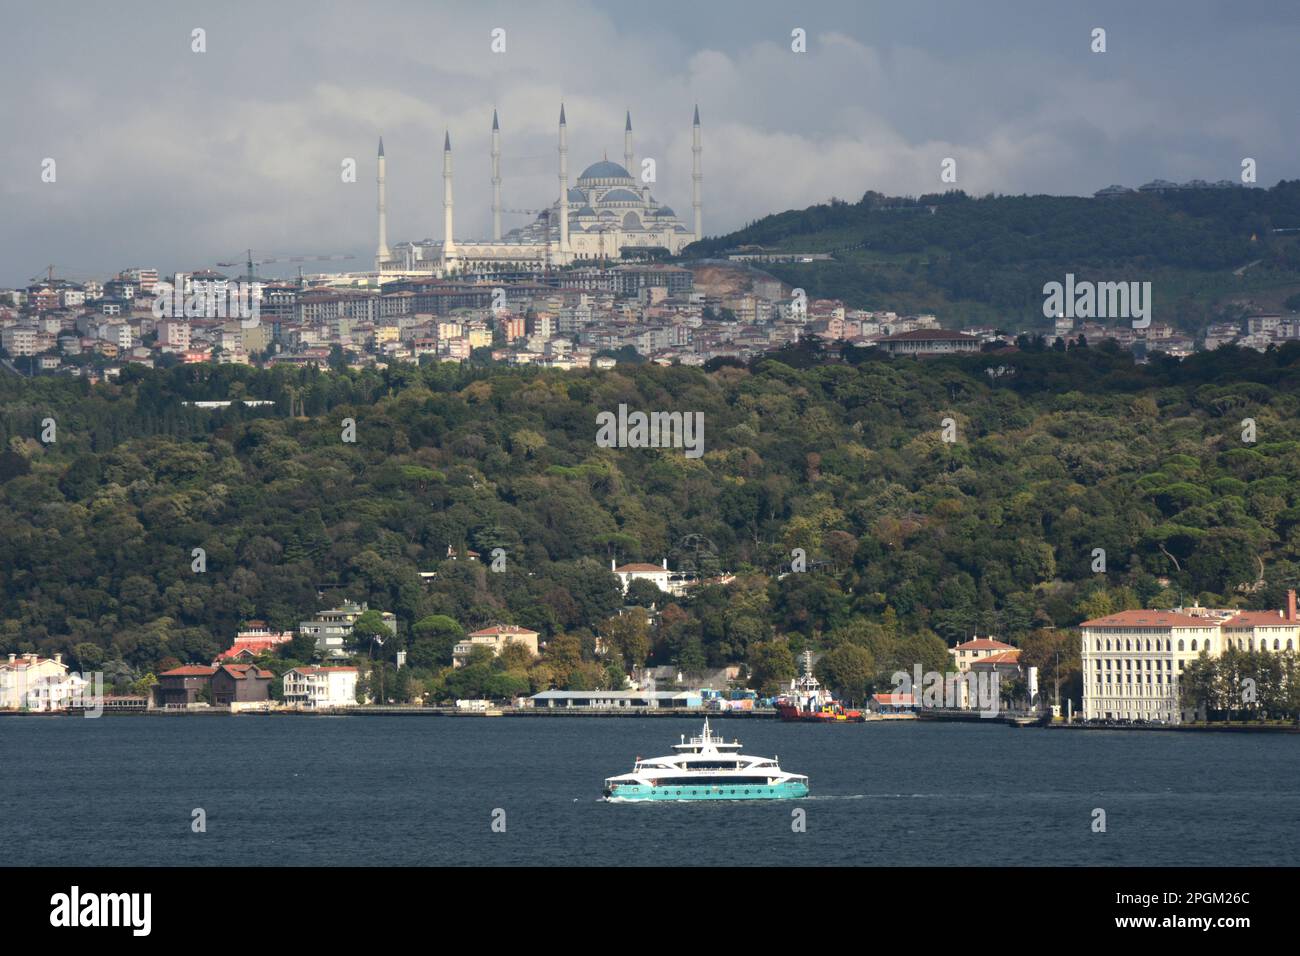 Un traghetto passeggeri che viaggia attraverso lo stretto del Bosforo, vicino al quartiere Uskudar, sul lato asiatico di Istanbul, in Turchia / Turkiye. Foto Stock